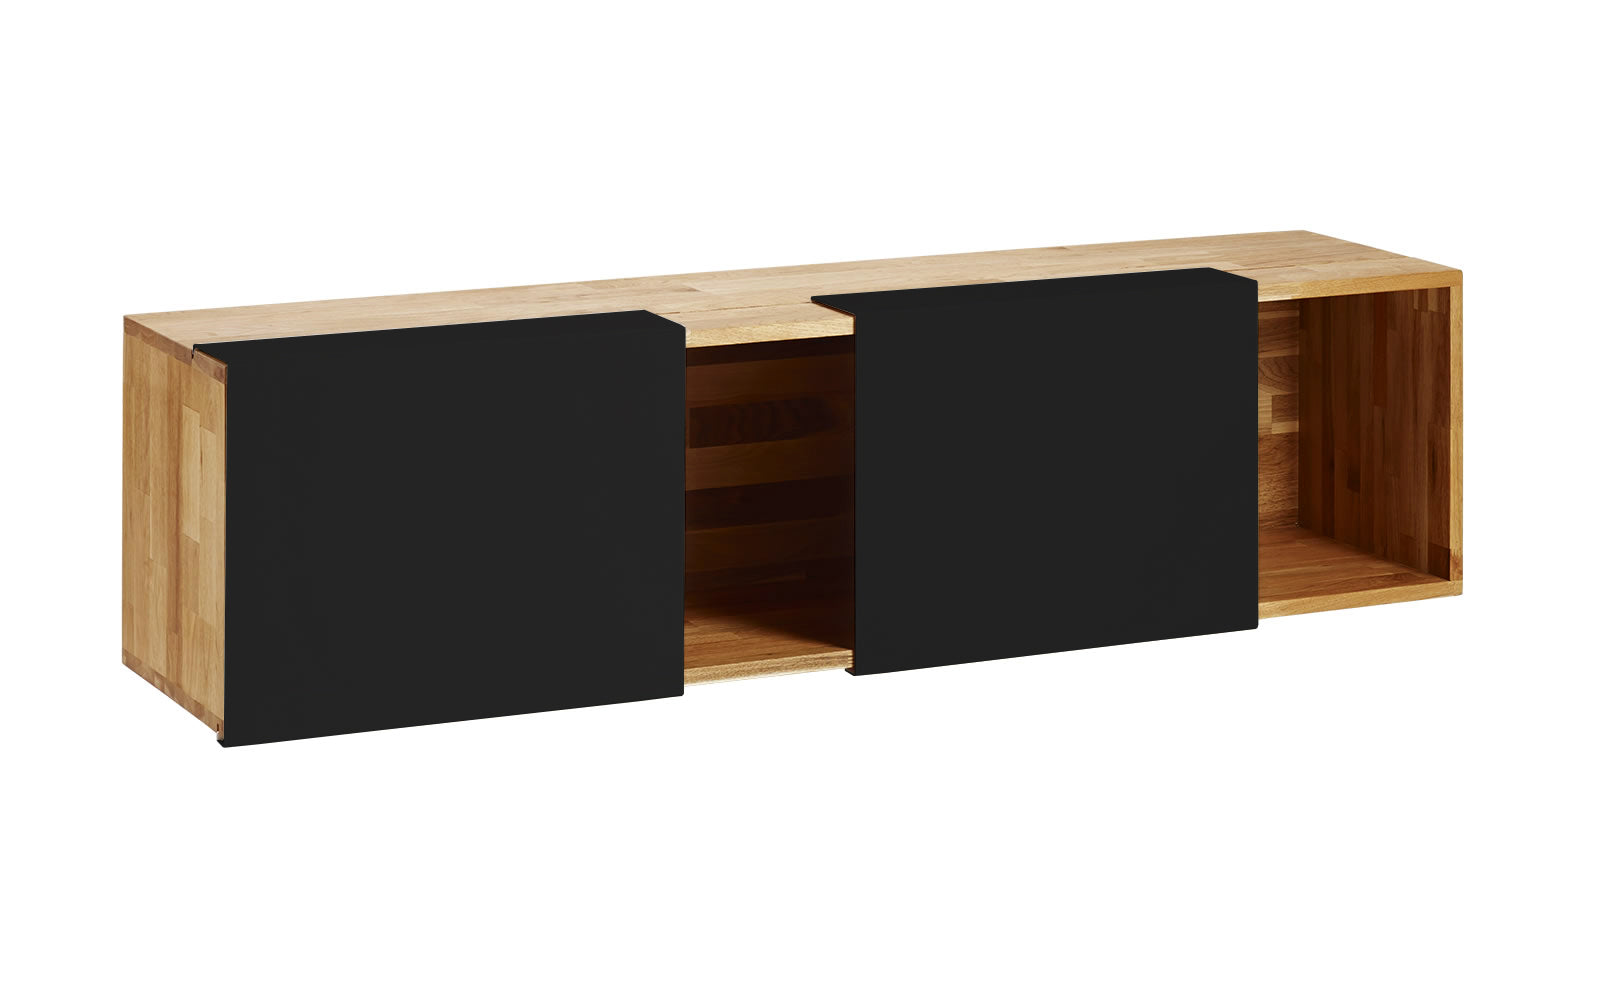 3X Universal Shelf- English Walnut, Matte Black Panels